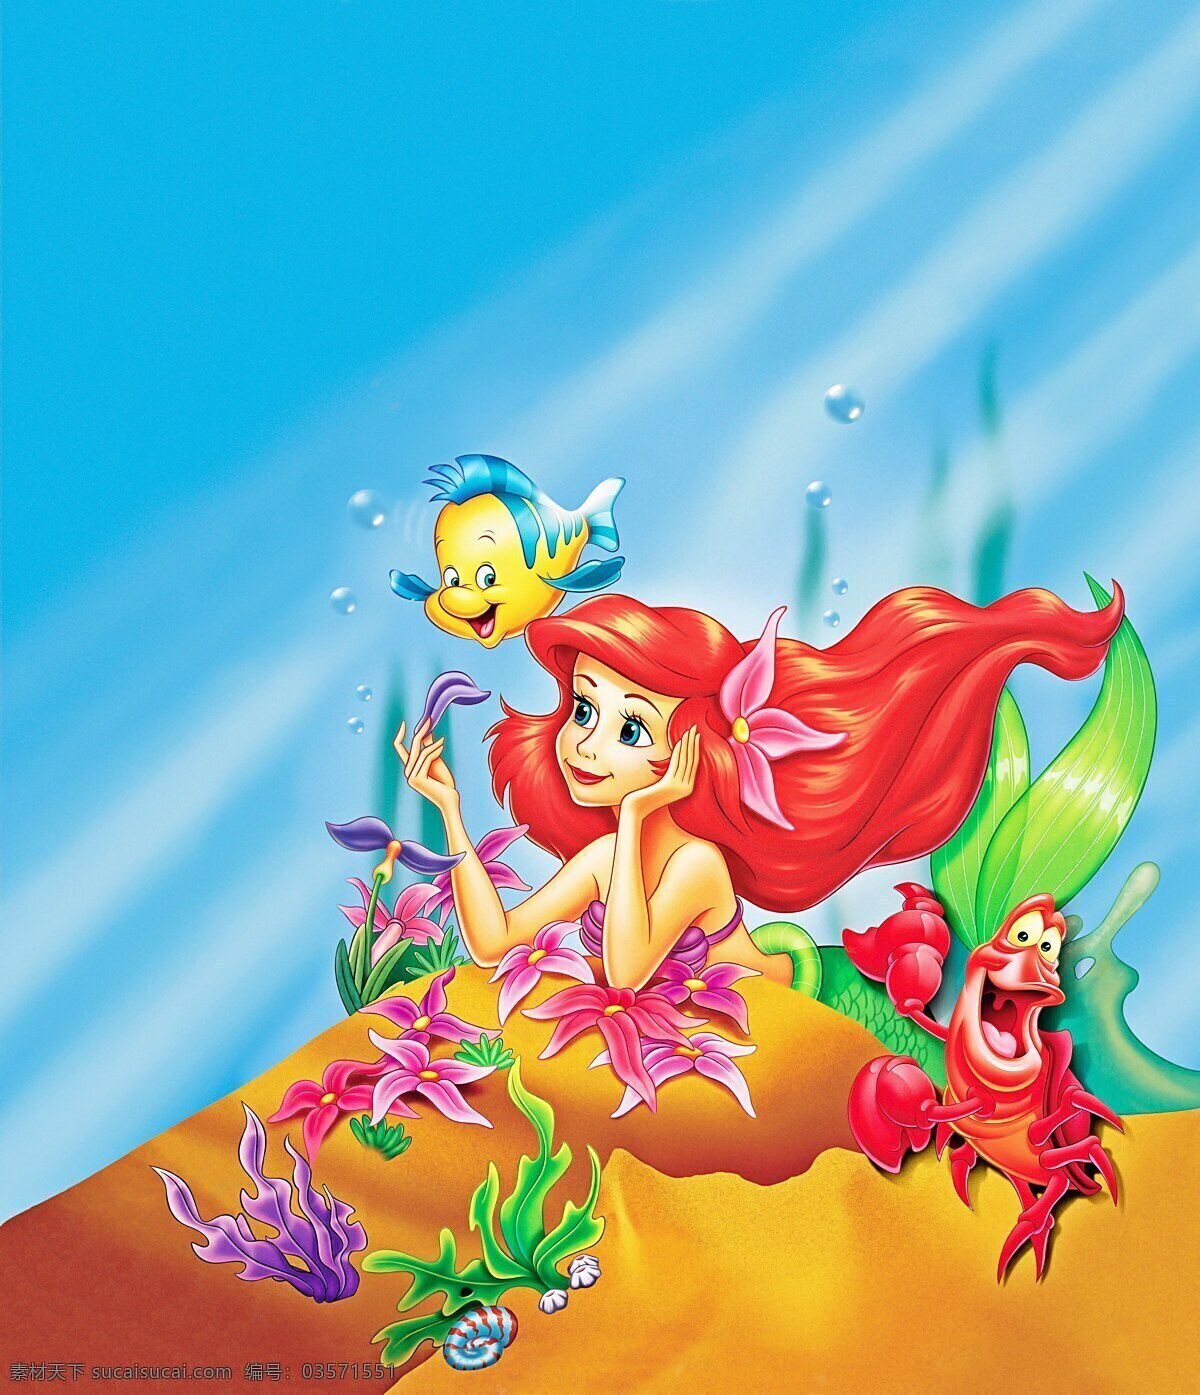 迪斯尼 动漫动画 动漫人物 公主 美人鱼 鱼 专辑 小 人鱼 海报 设计素材 模板下载 小人鱼海报 小美人鱼 艾瑞尔 其他海报设计